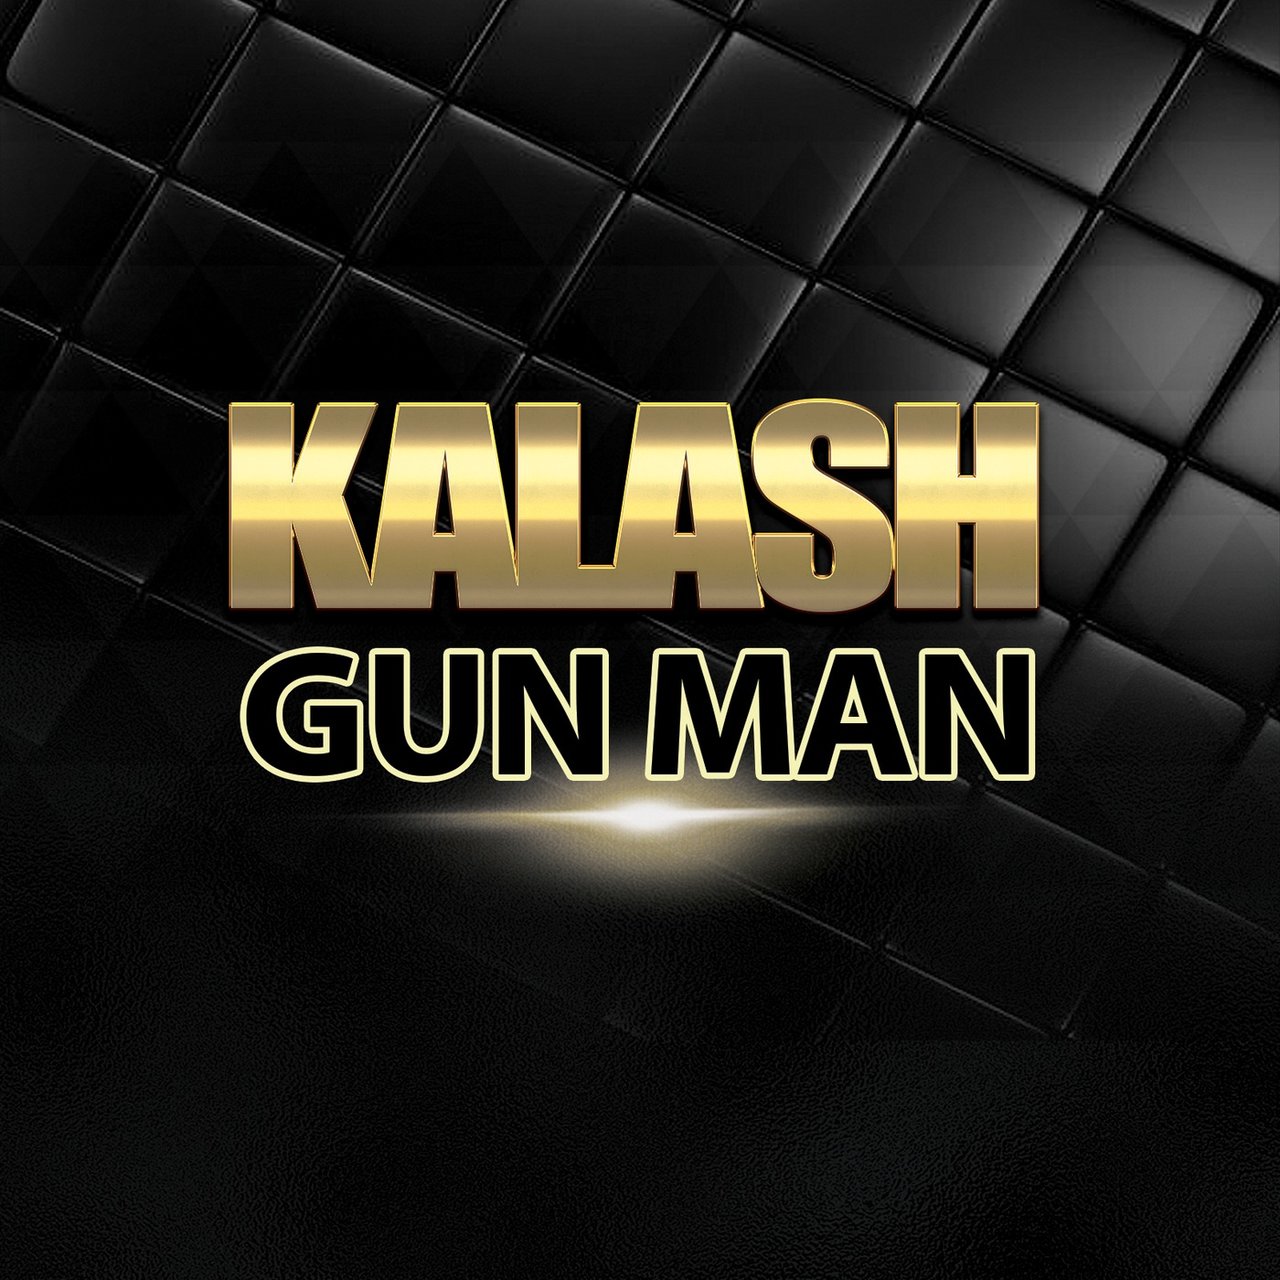 Kalash - Gun Man (Cover)